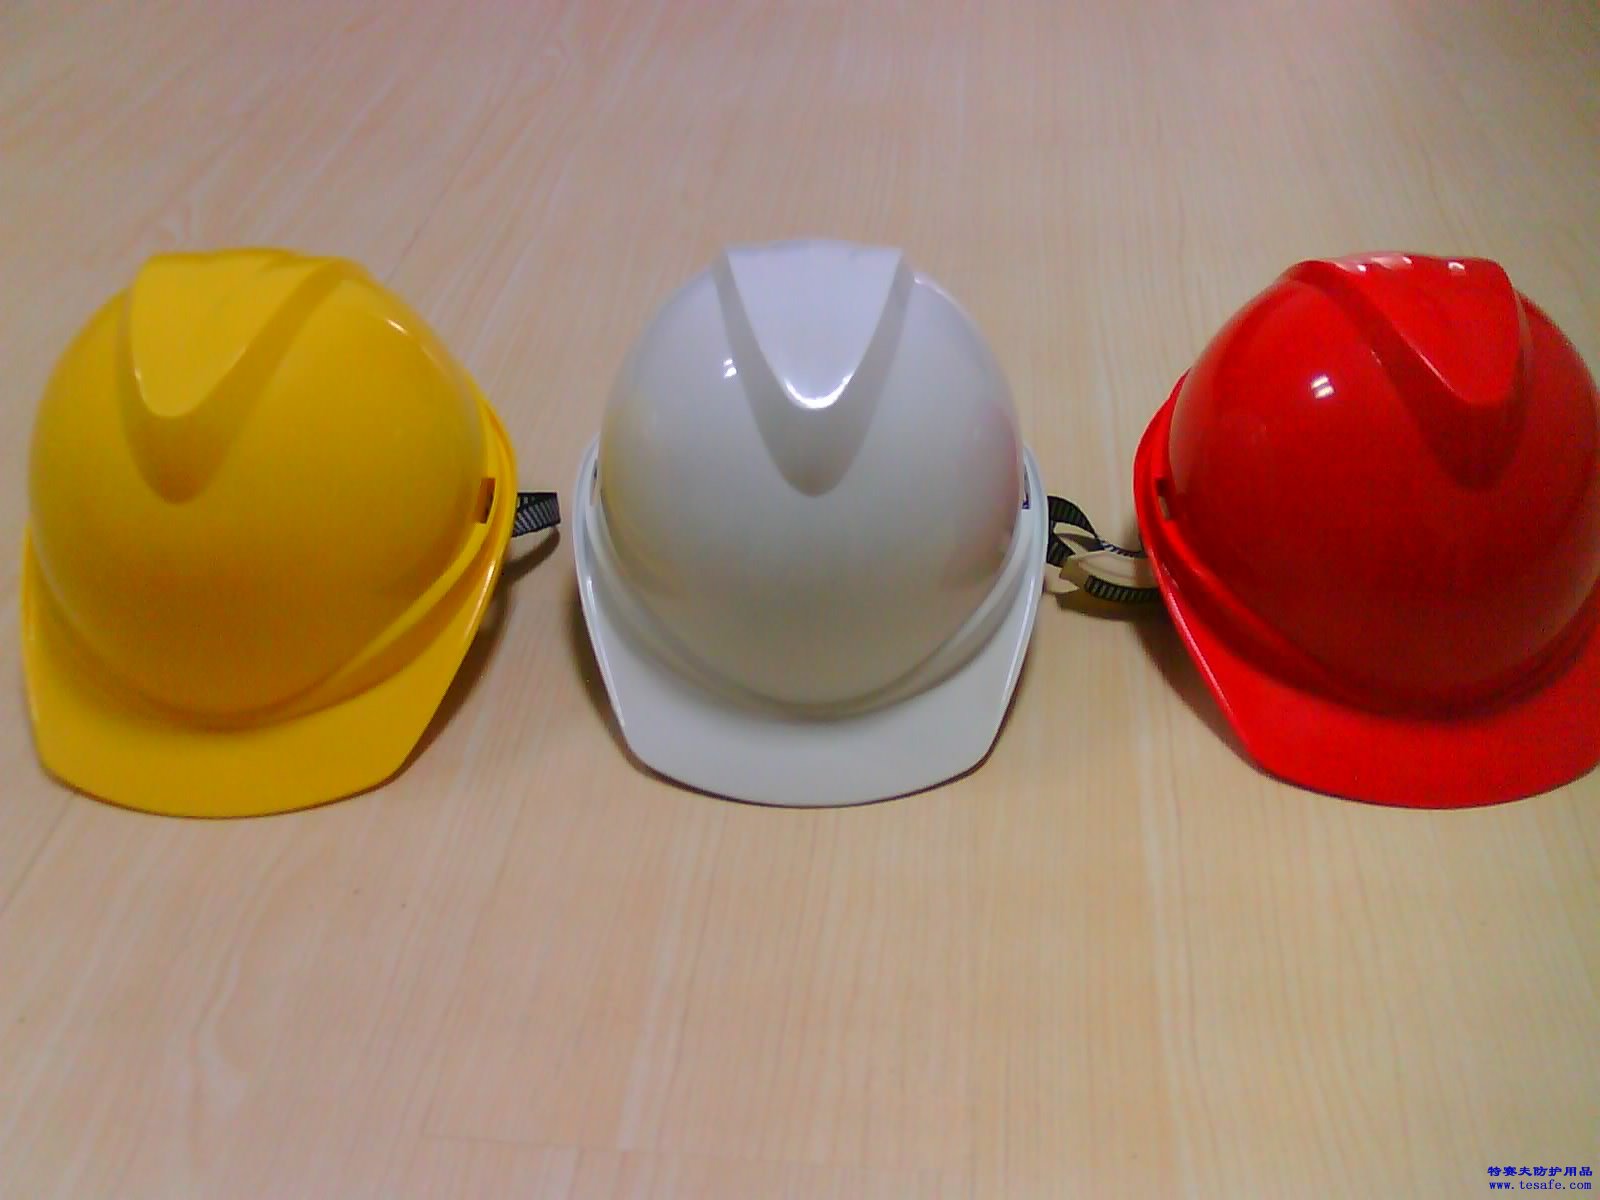 厂家直销安全帽ABS安全帽玻璃钢安全帽质量保证价格优惠